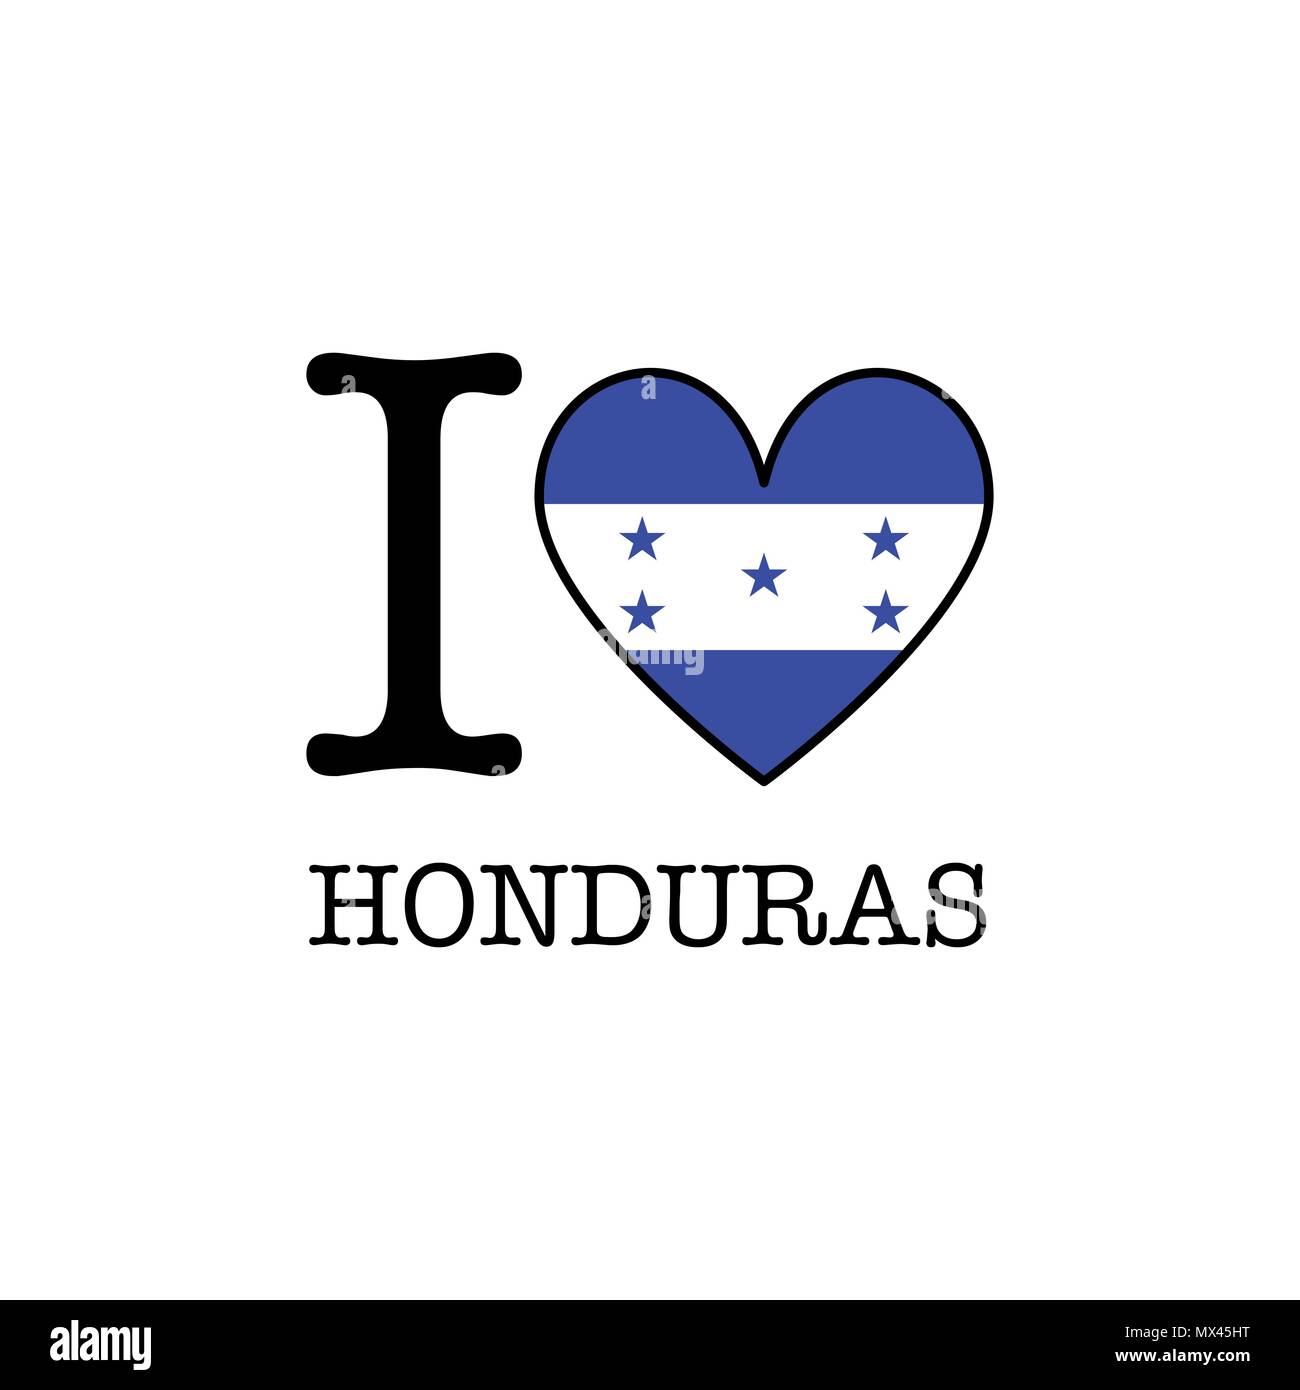 Honduras Landscape Wallpapers  Top Free Honduras Landscape Backgrounds   WallpaperAccess